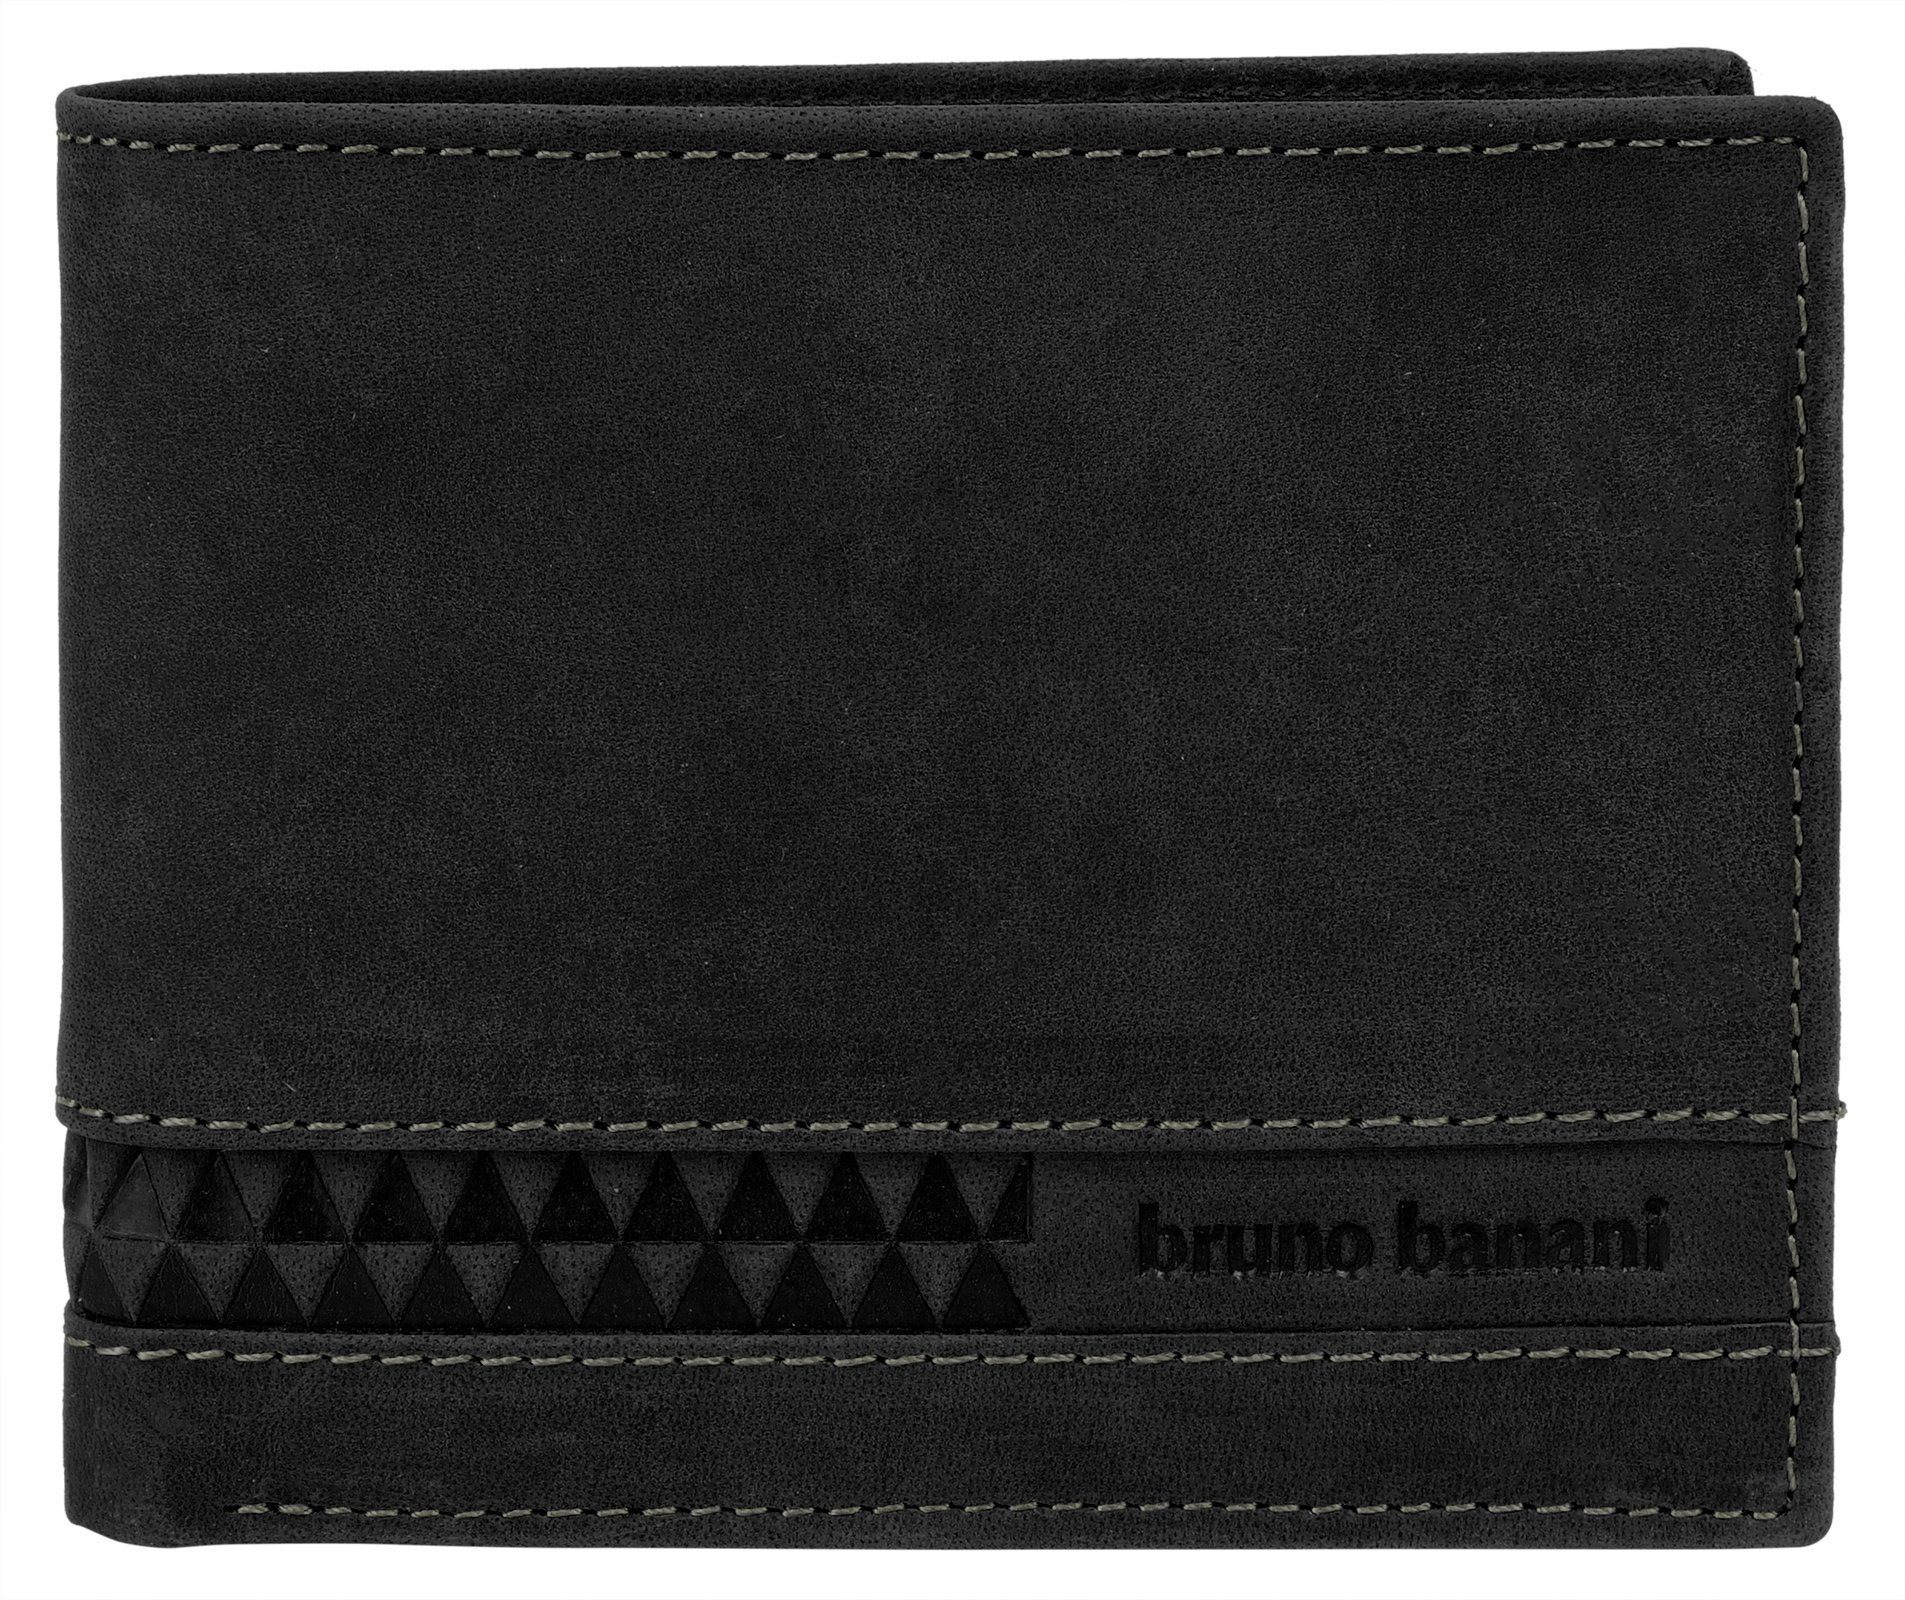 Banani schwarz Leder Geldbörse, Bruno echt